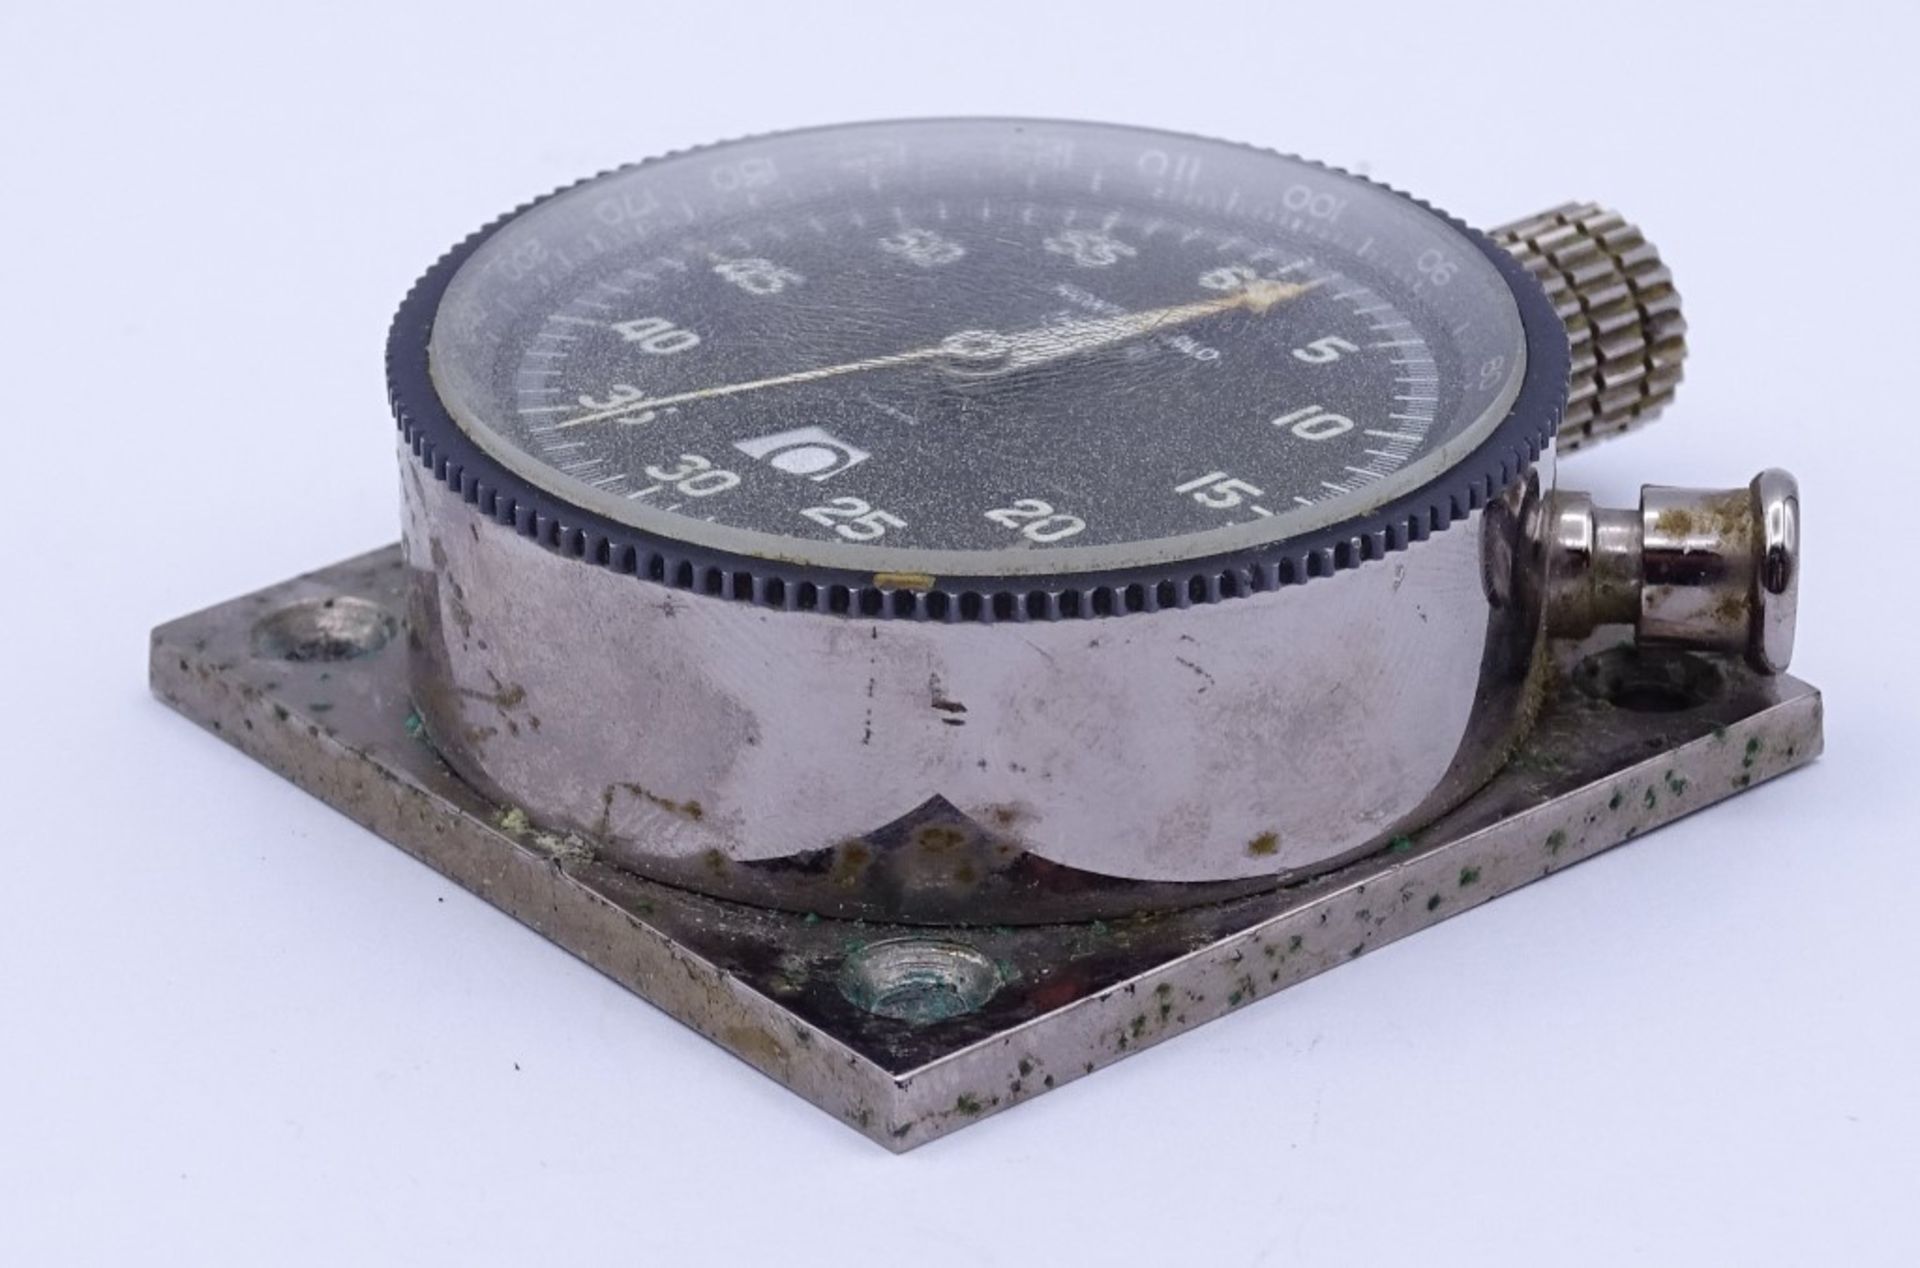 Dashboard Uhr "HEUER Monte-Carlo" Leonidas SA,Schweiz um 1960,nR:67936;Metallgehäuse auf - Bild 7 aus 7